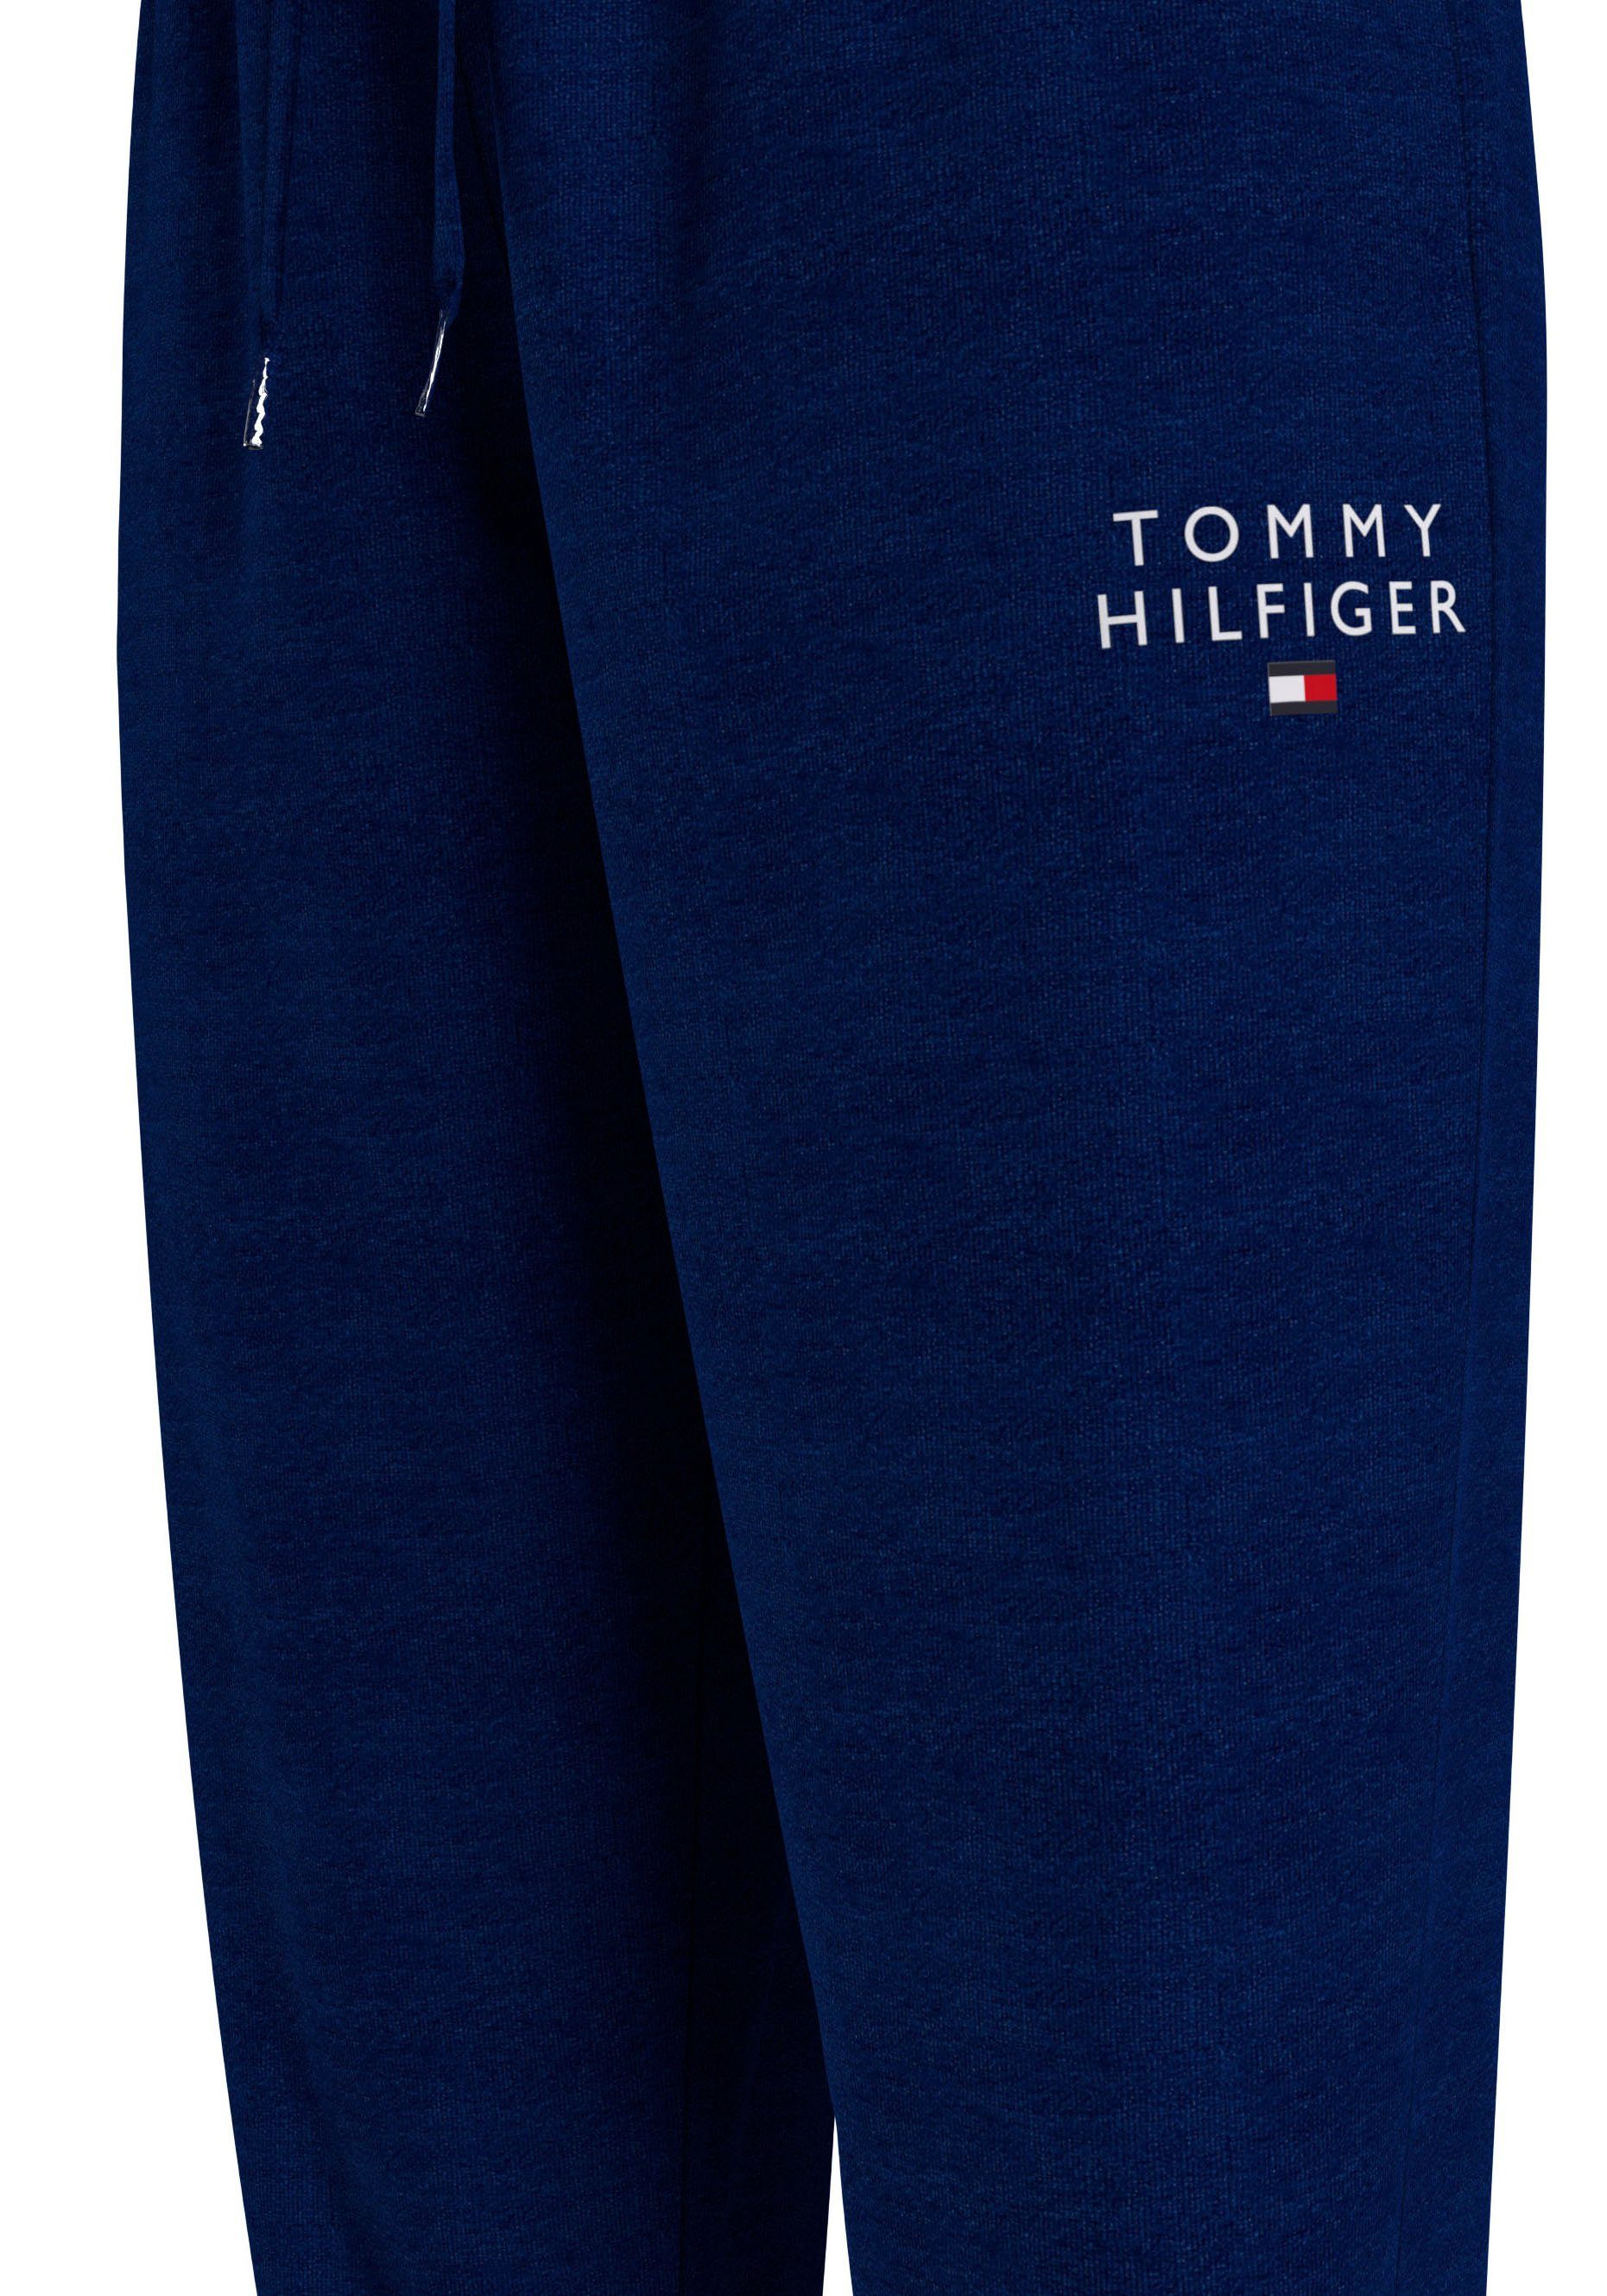 Tommy Hilfiger Underwear Sweathose PANTS mit Tommy Hilfiger TRACK Markenlogo-Aufdruck